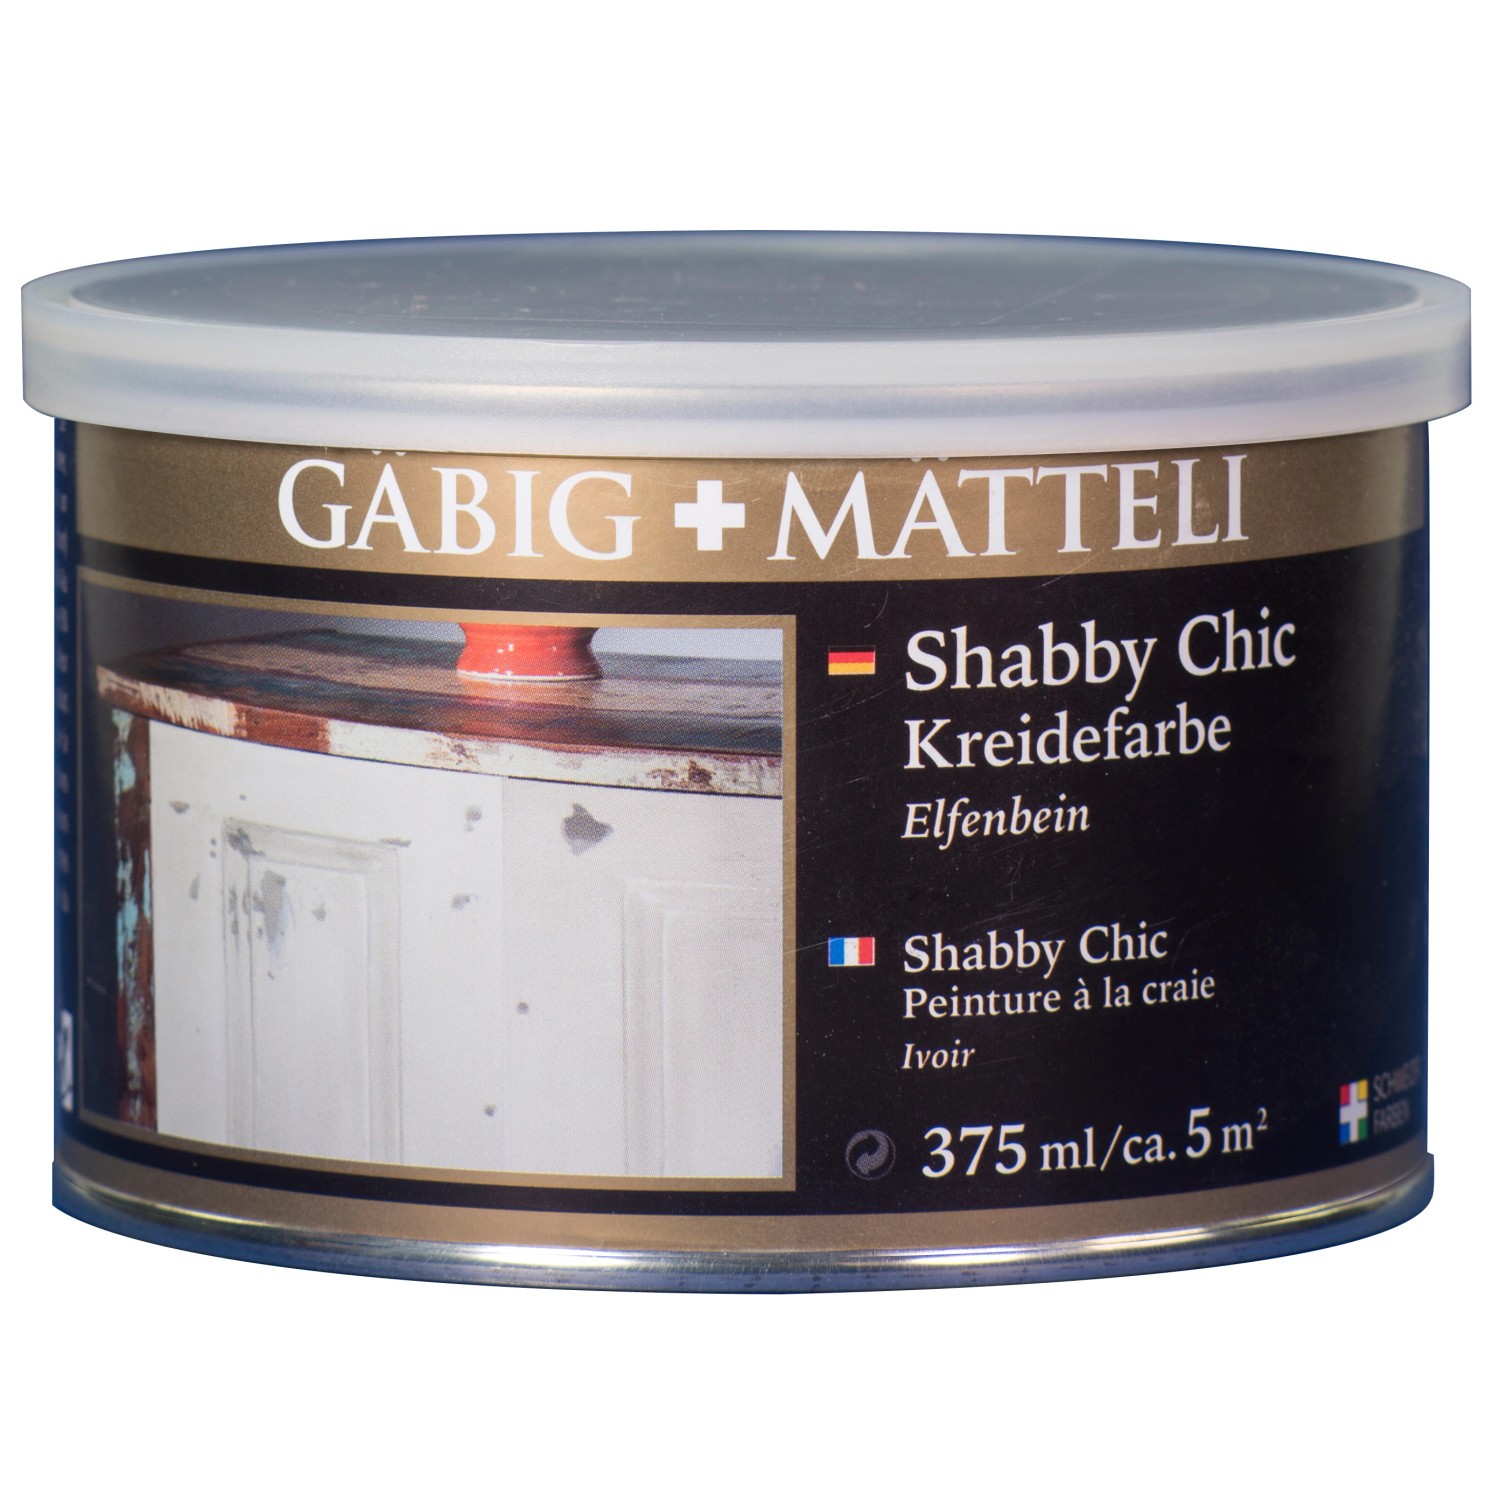 Gäbig+Mätteli Shabby Chic Kreidefarbe Elfenbein matt 375 ml von Gäbig+Mätteli